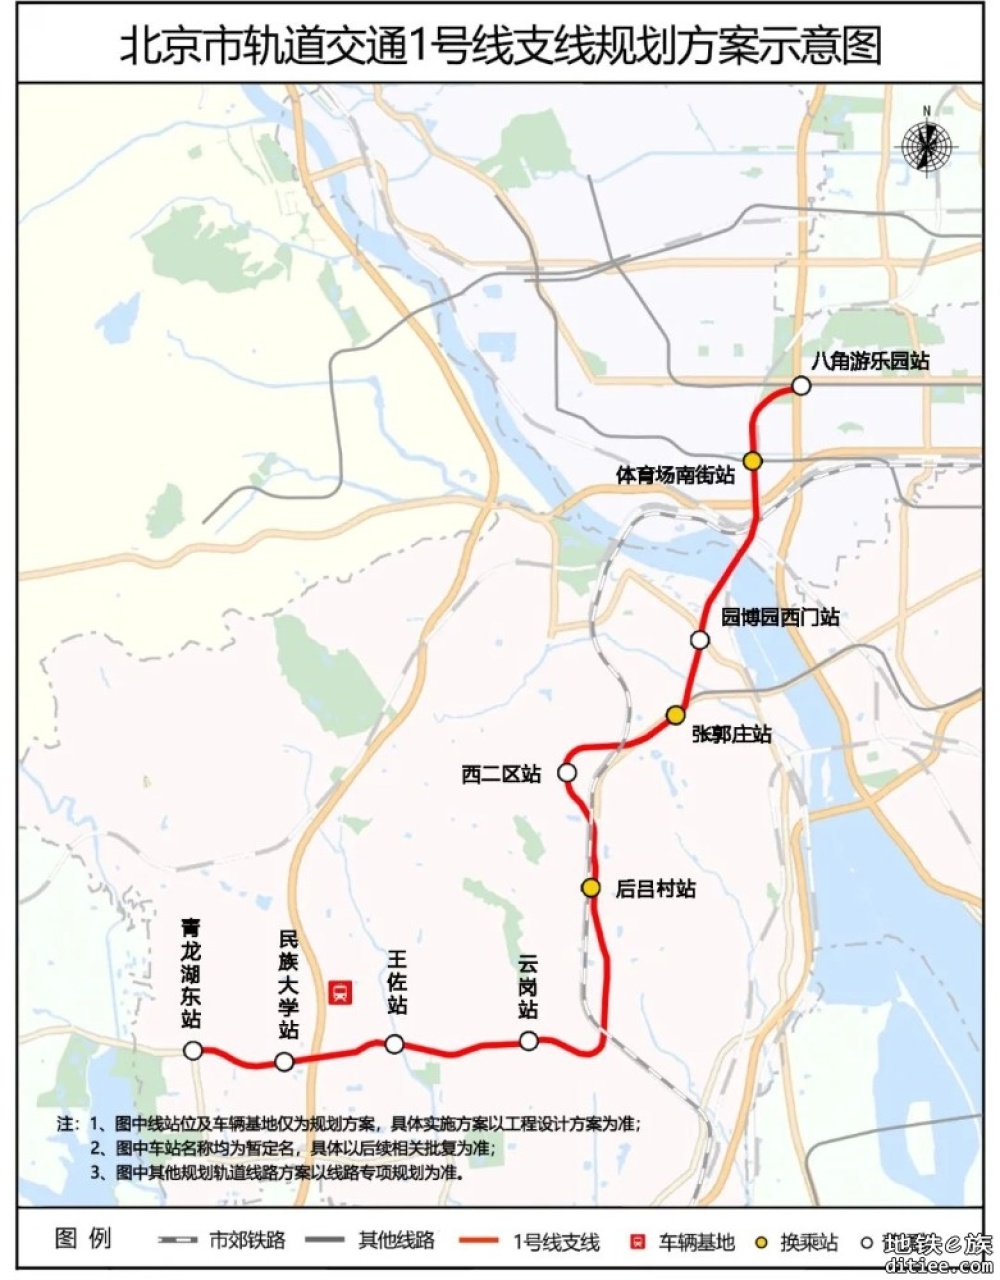 北京地铁1号线支线开工